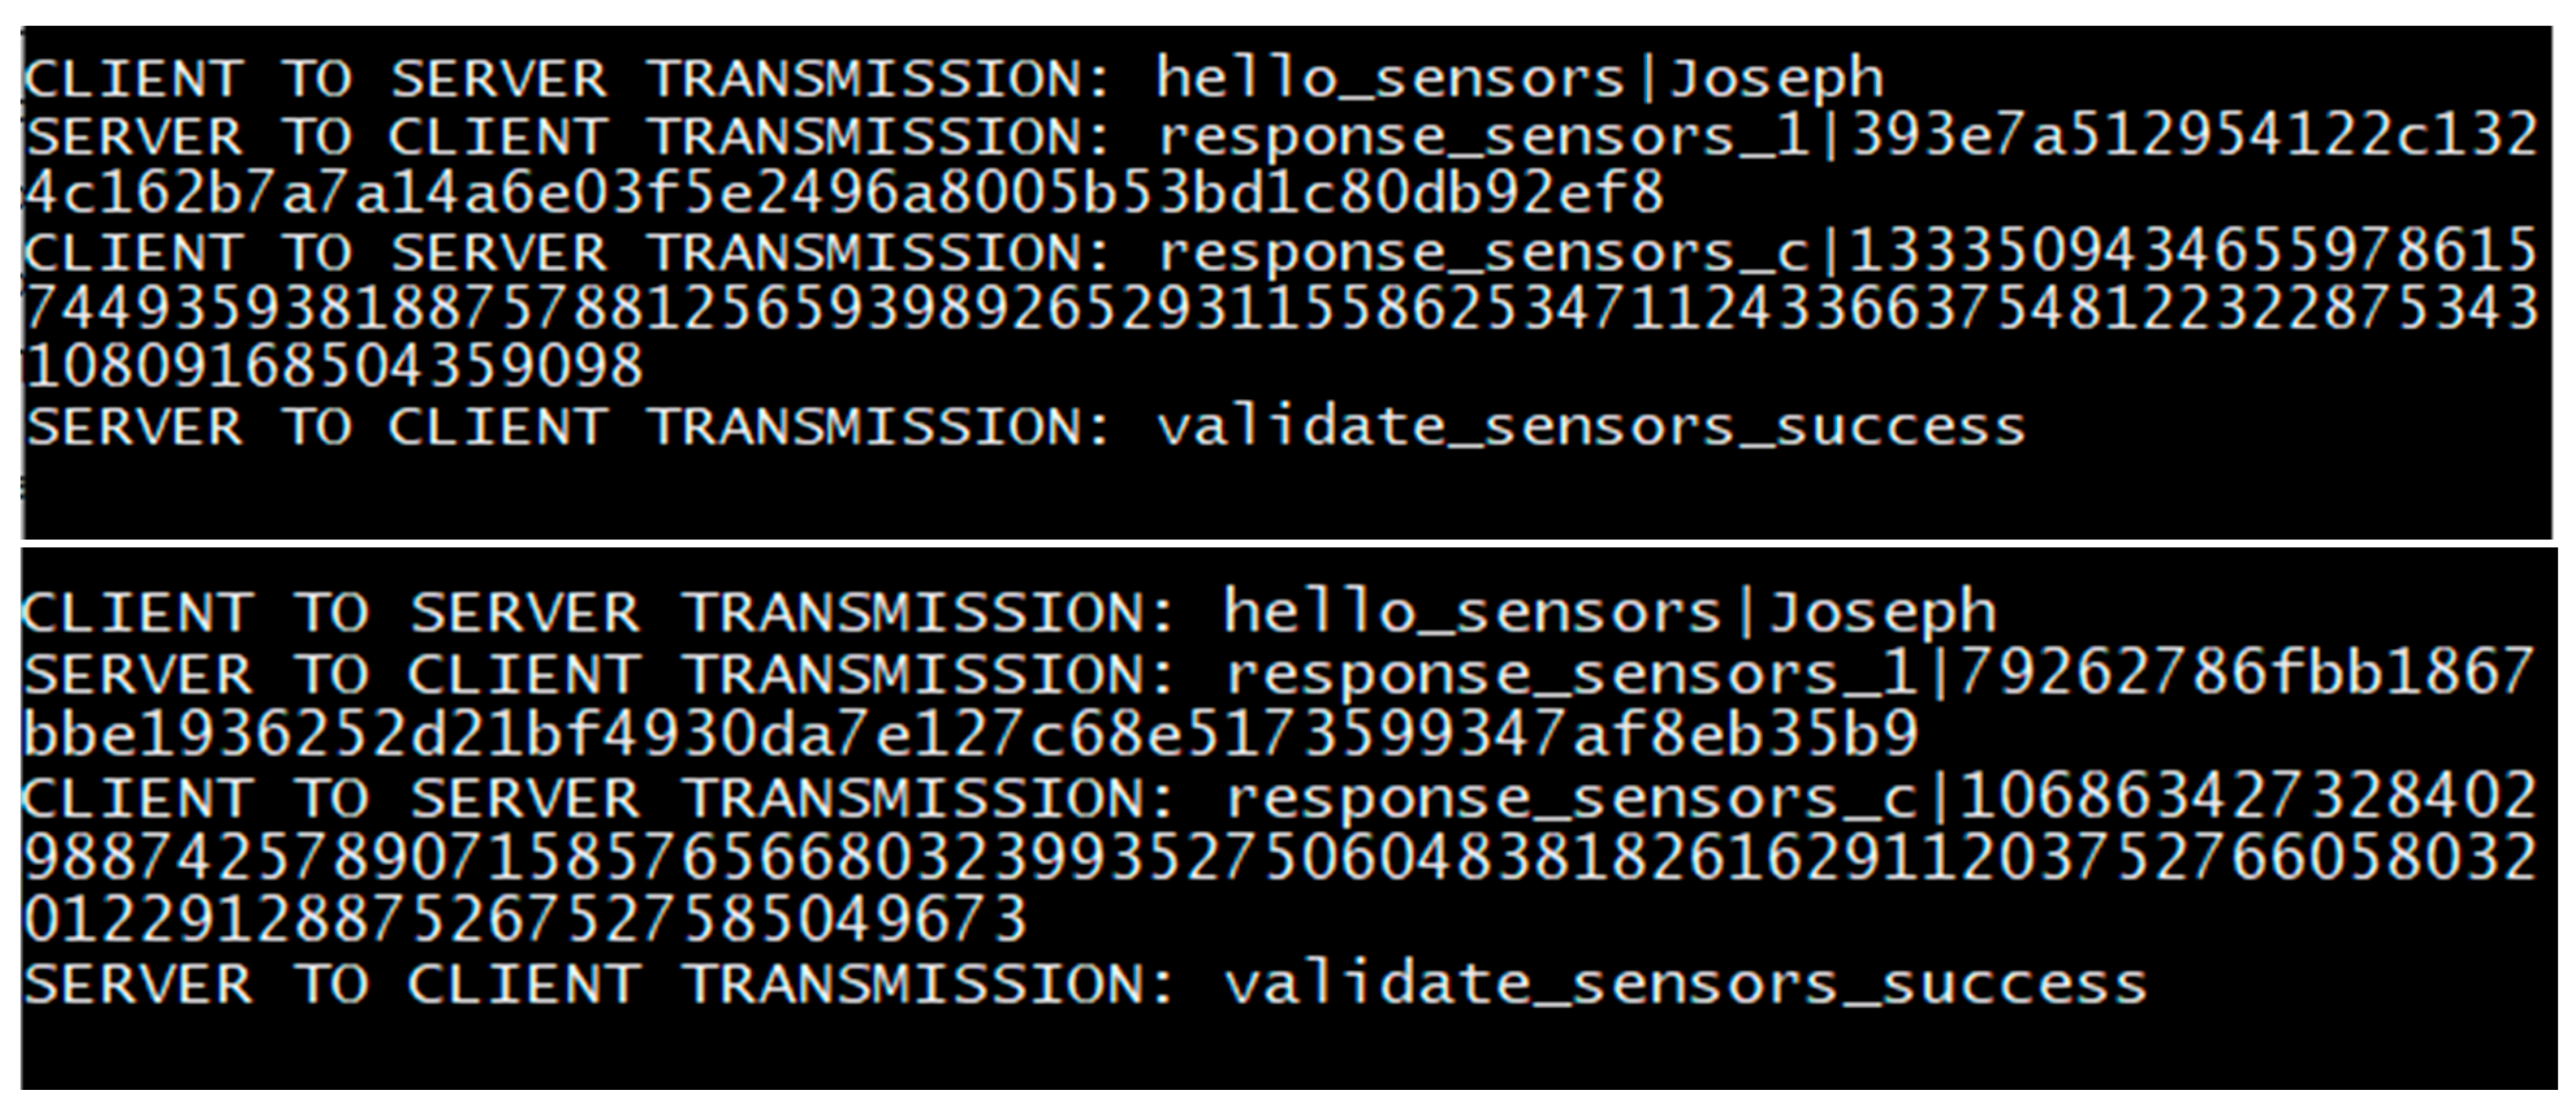 Sensors 20 04212 g014